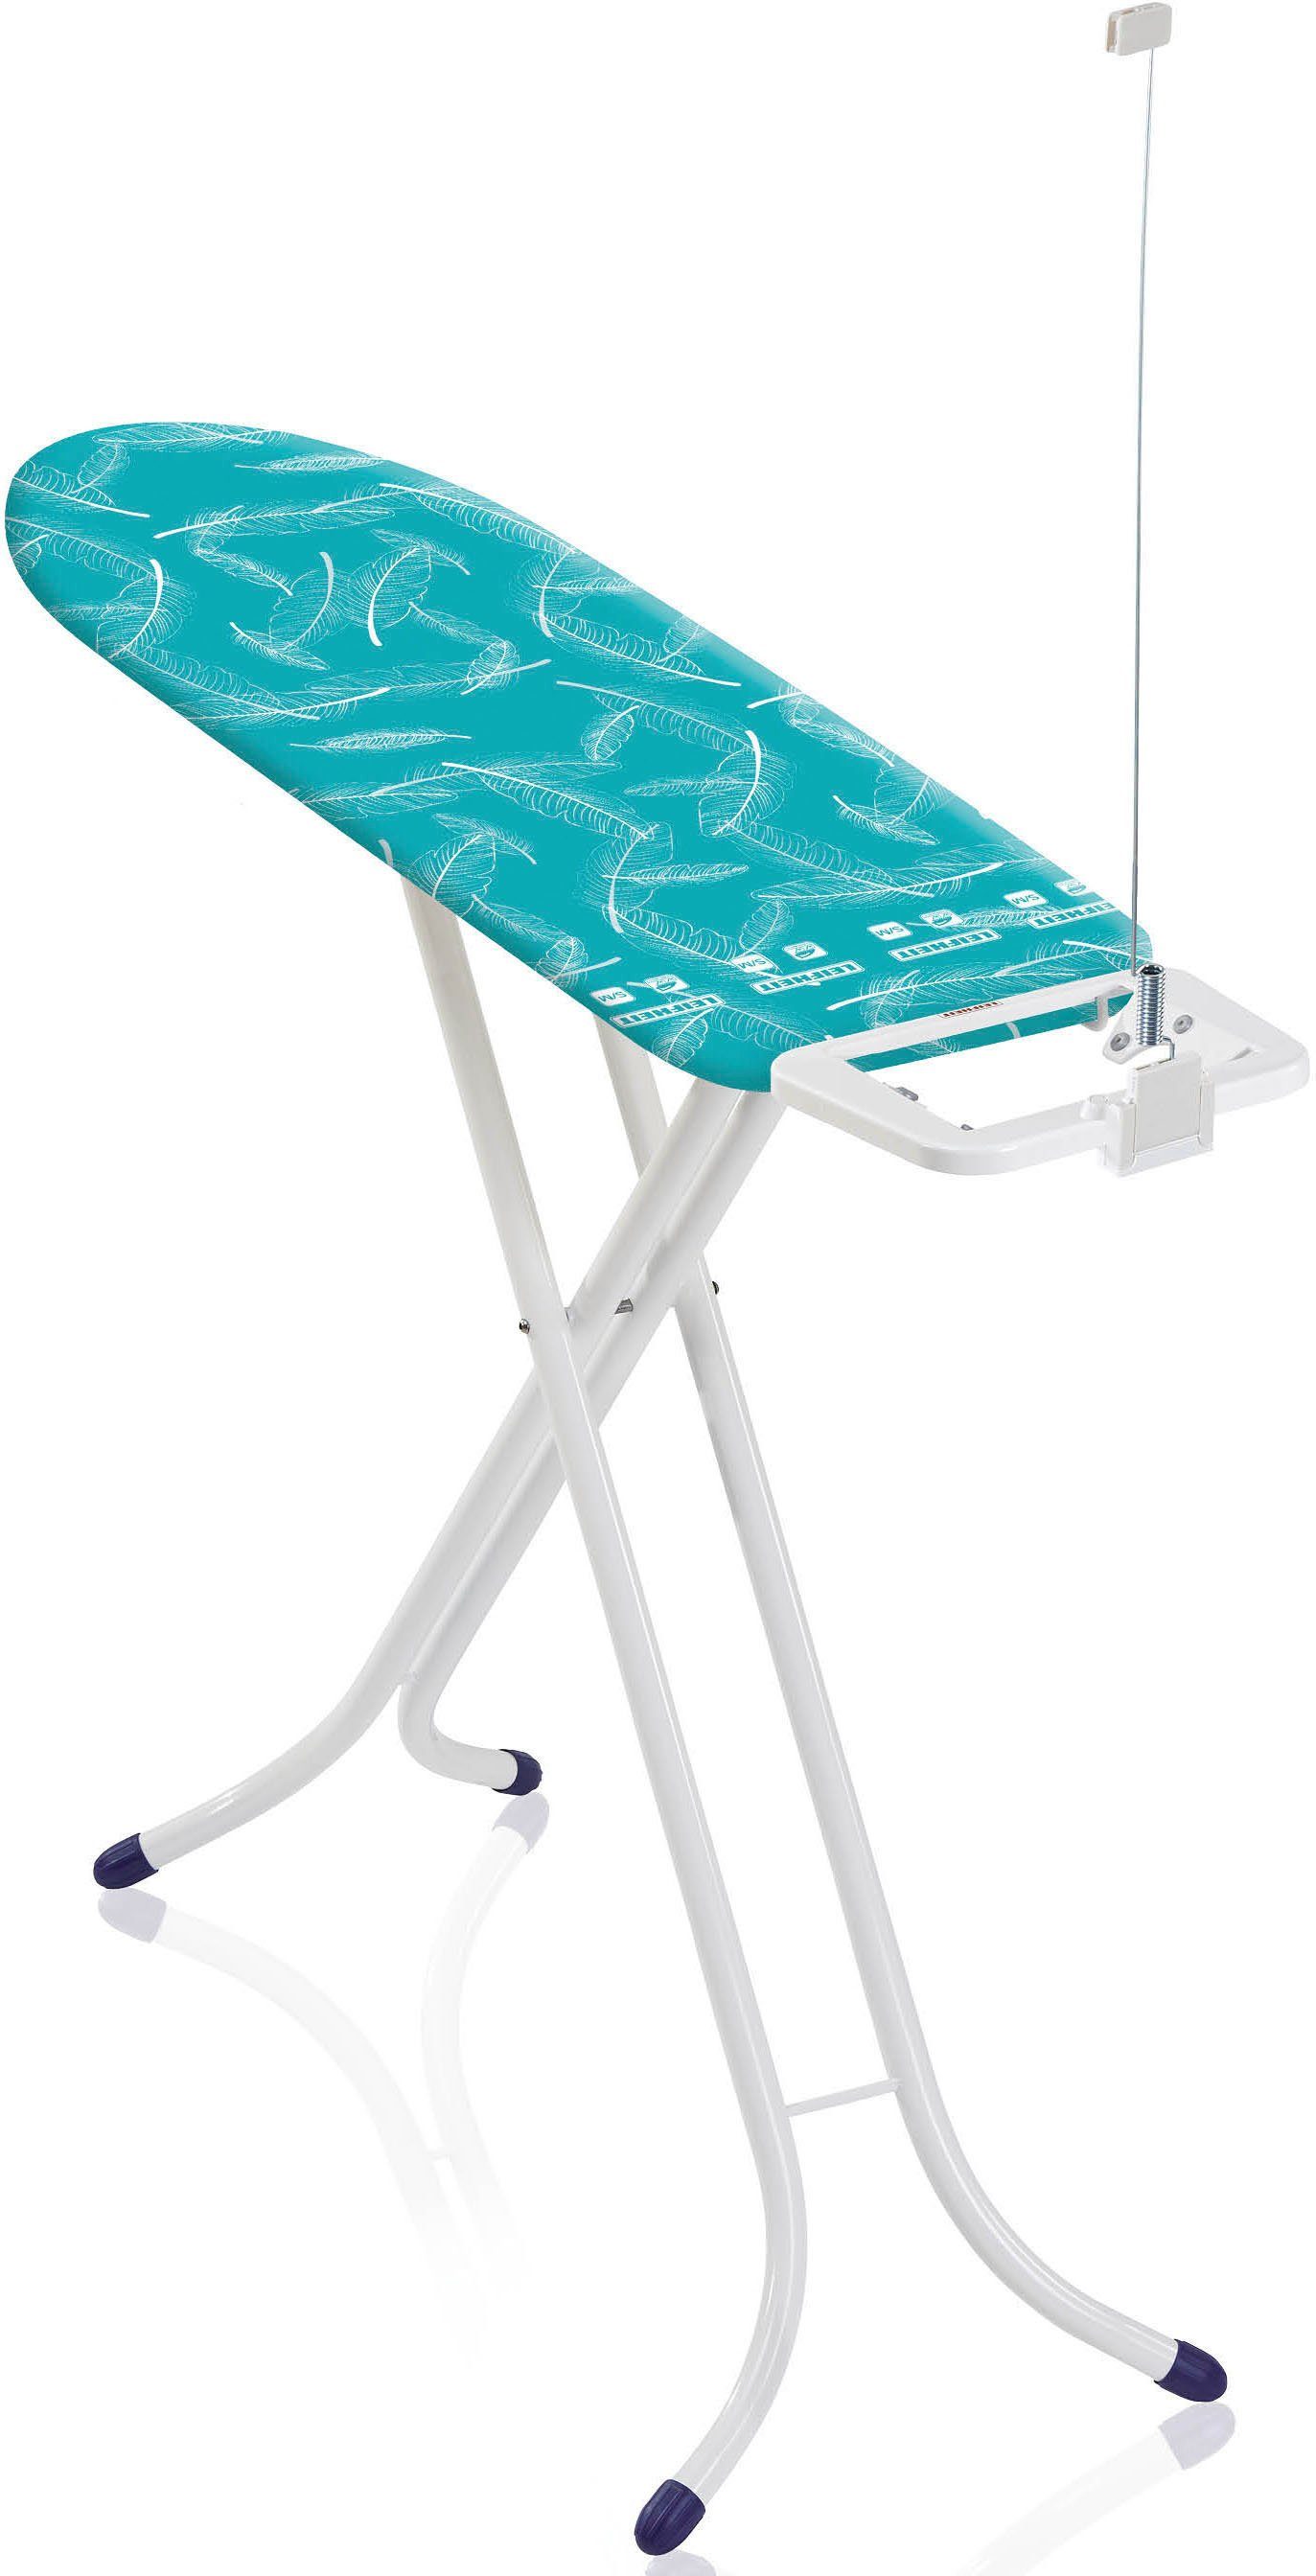 leifheit strijkplank airboard s basic strijkoppervlak 110x30 cm blauw